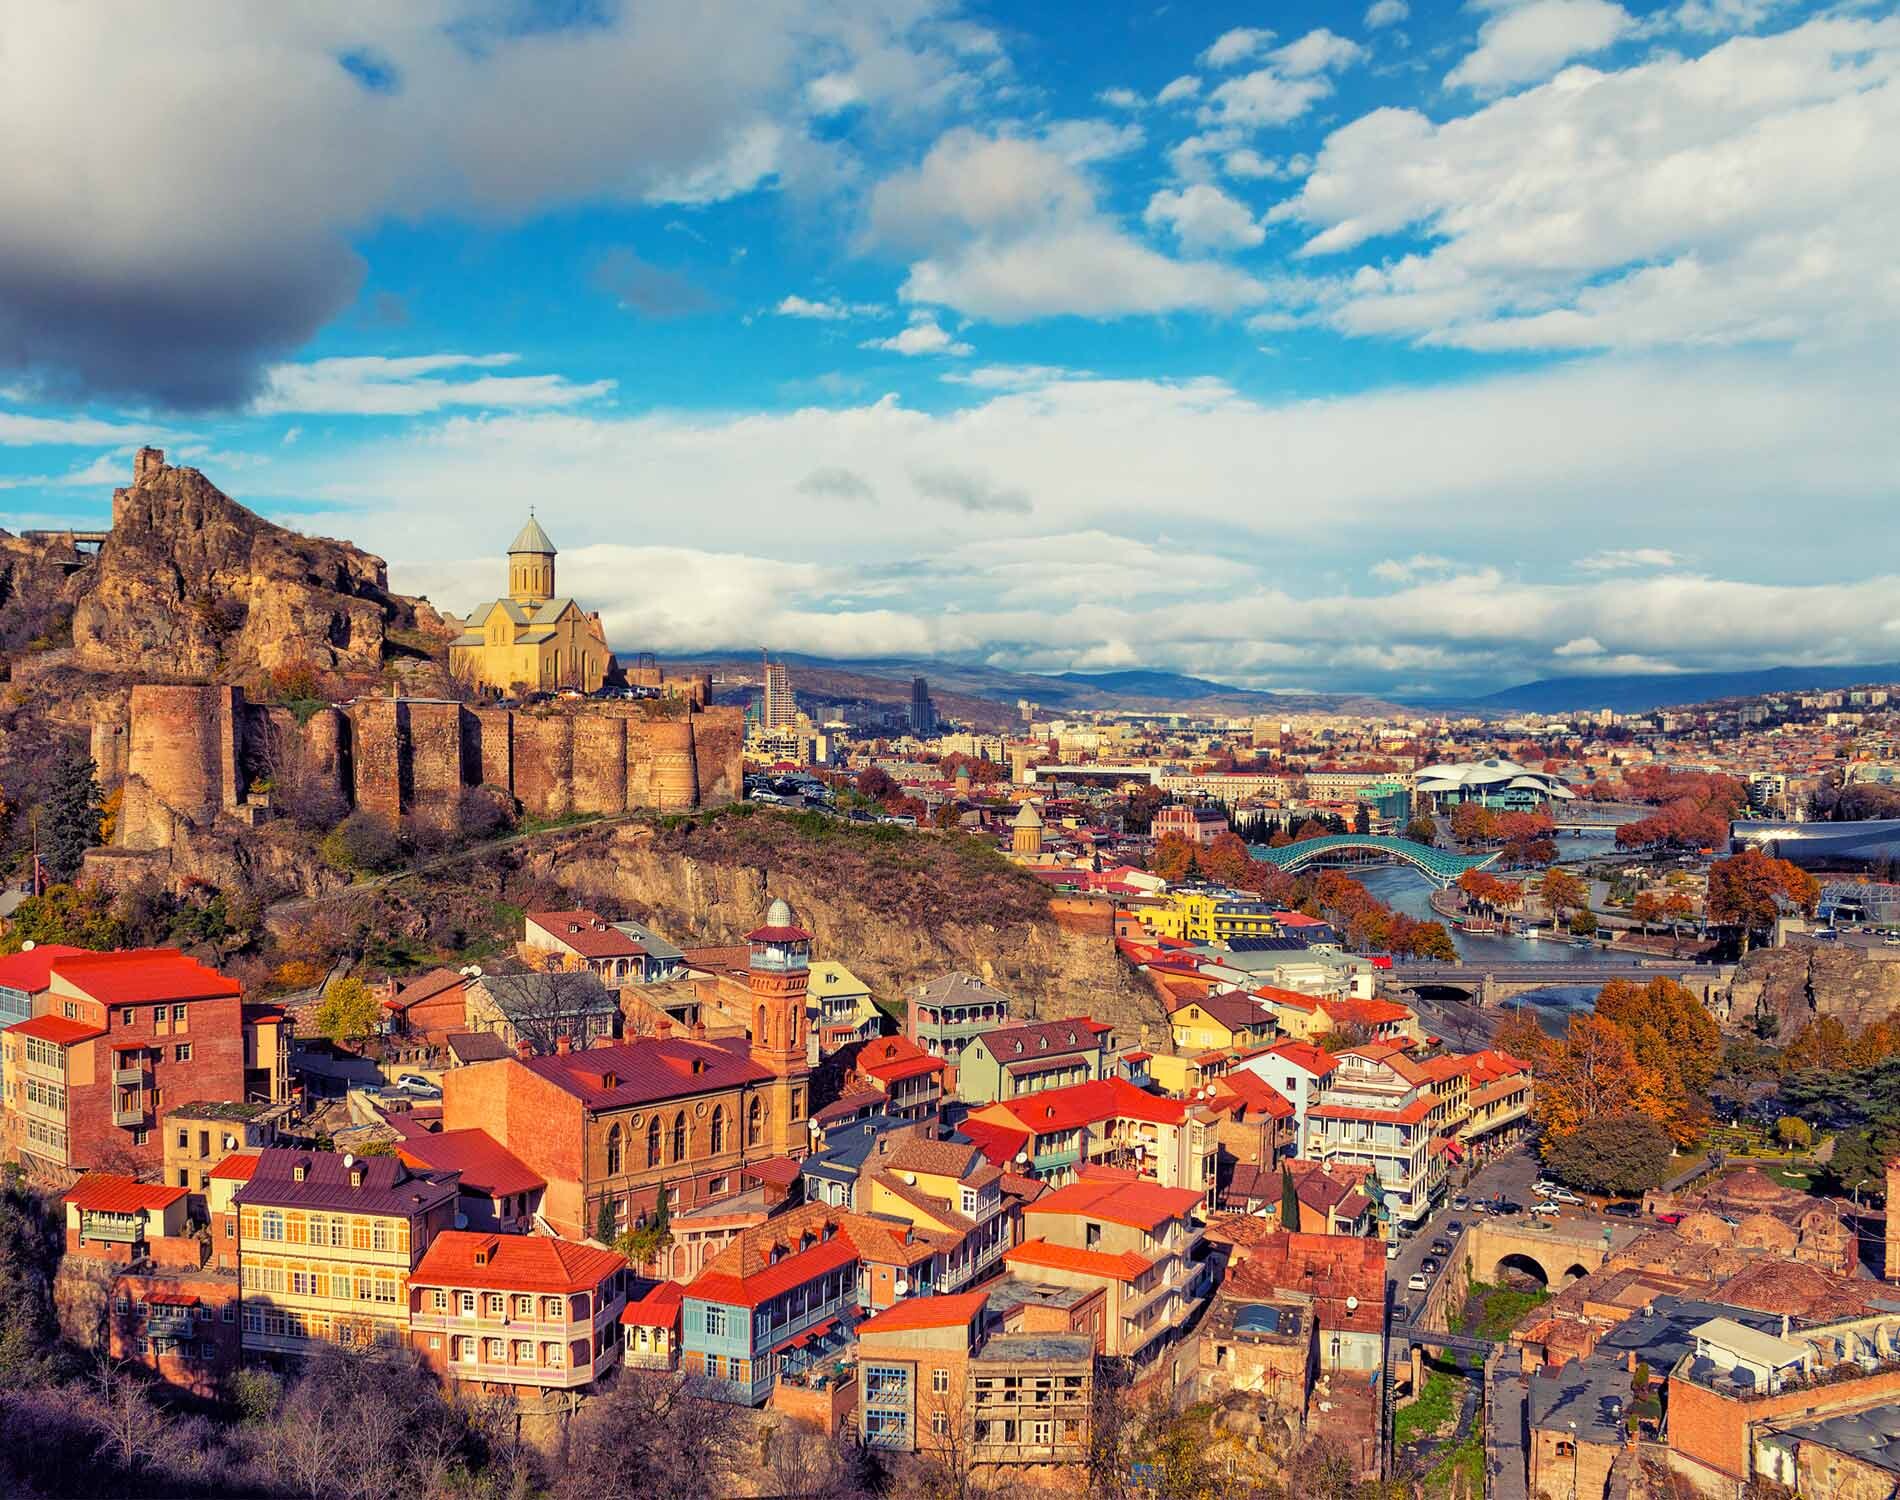 Tbilisi background image.jpg